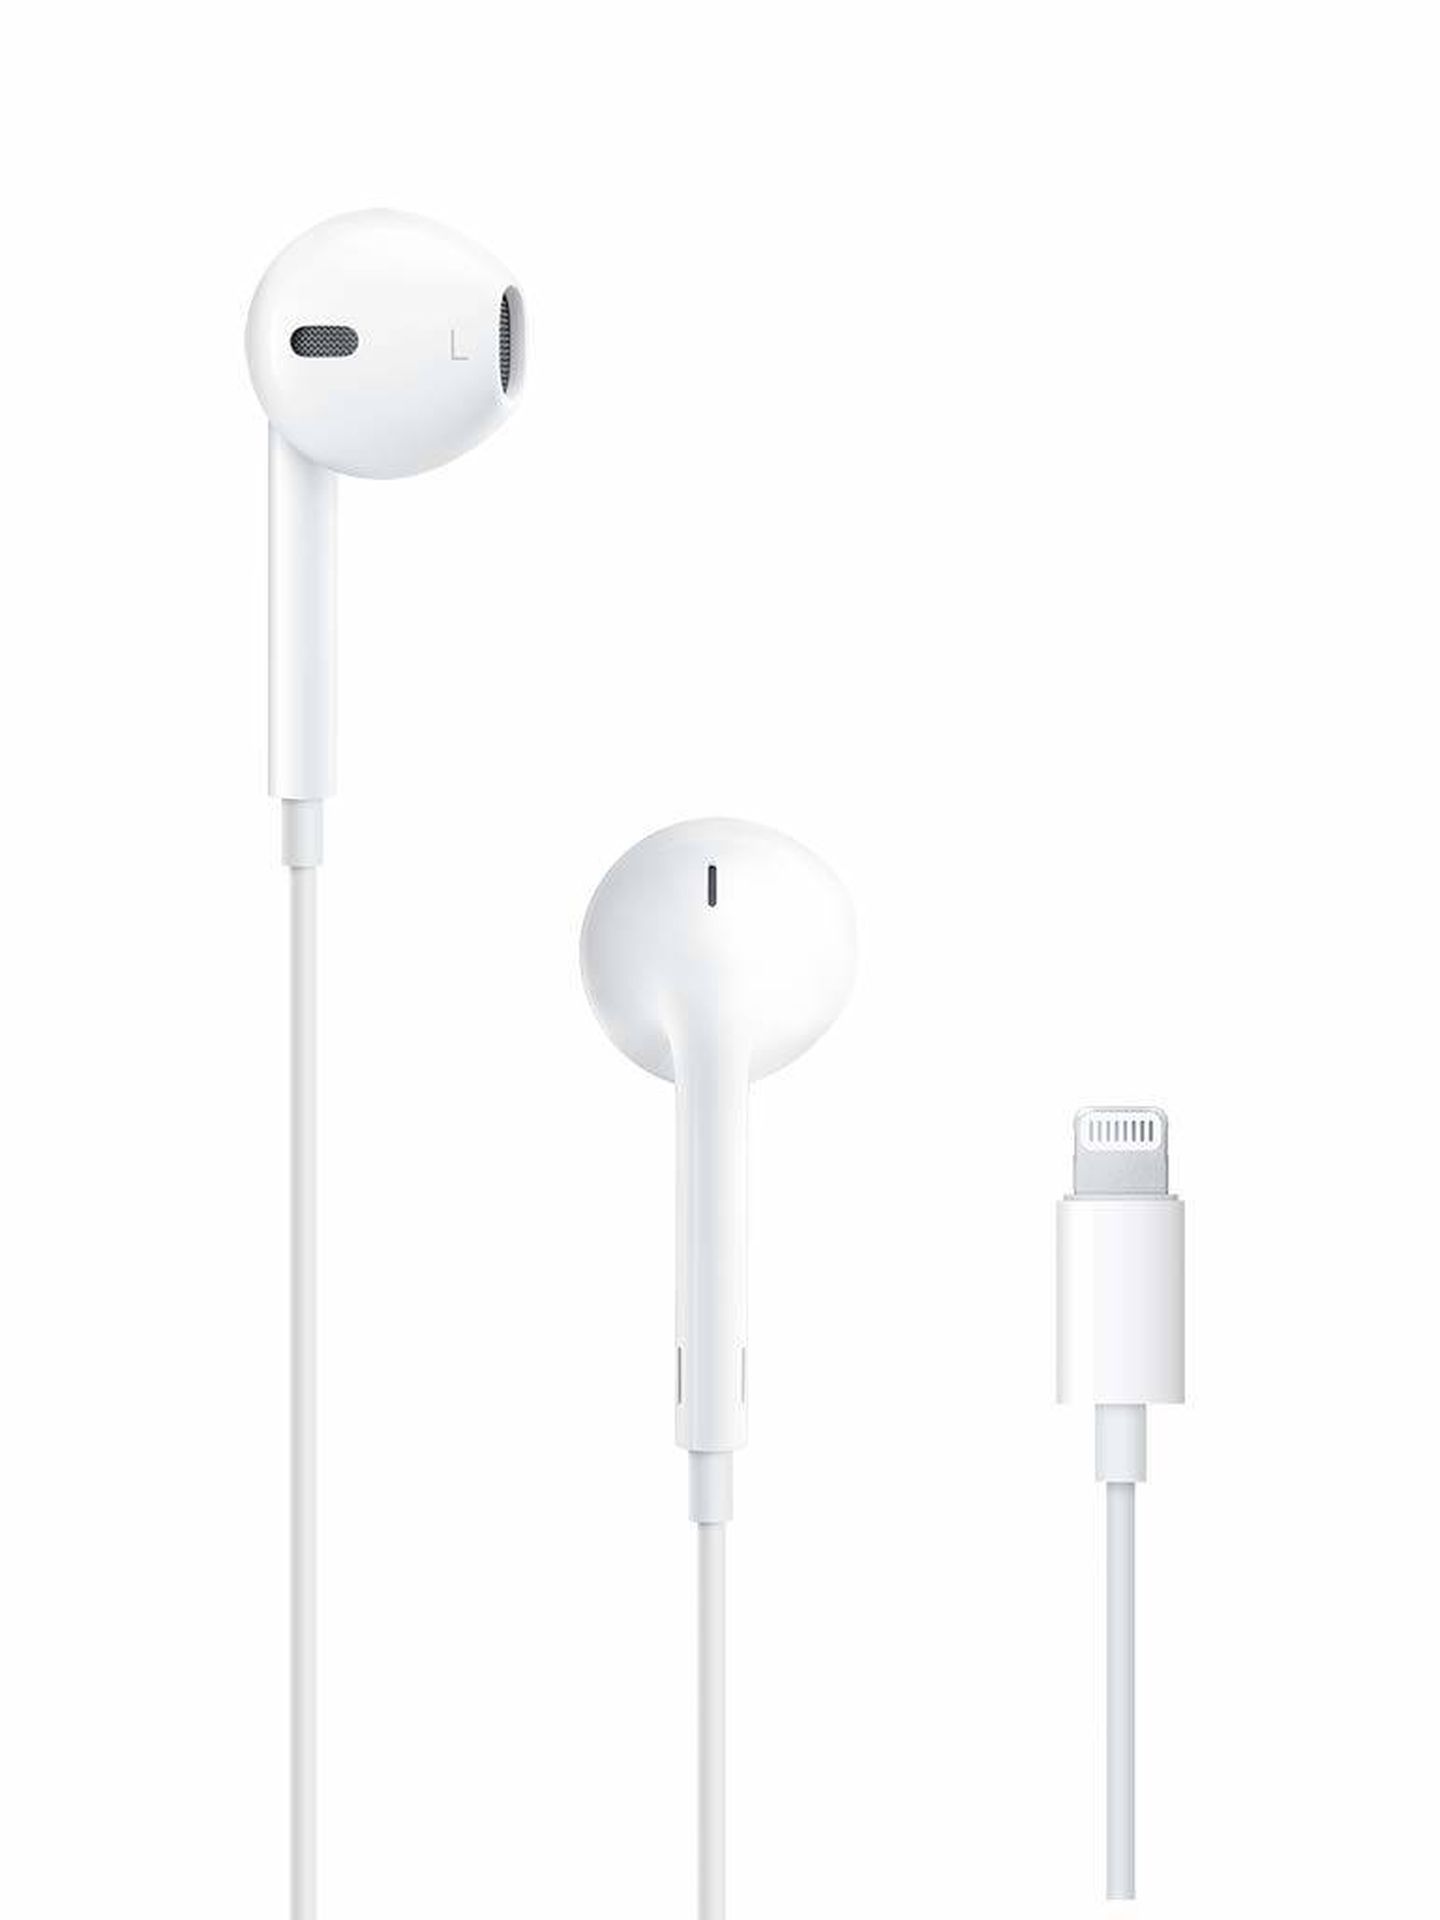 Adiós a los EarPods con el iPhone 12. Si los quieres, todo apunta a que tendrás que comprarlos aparte.